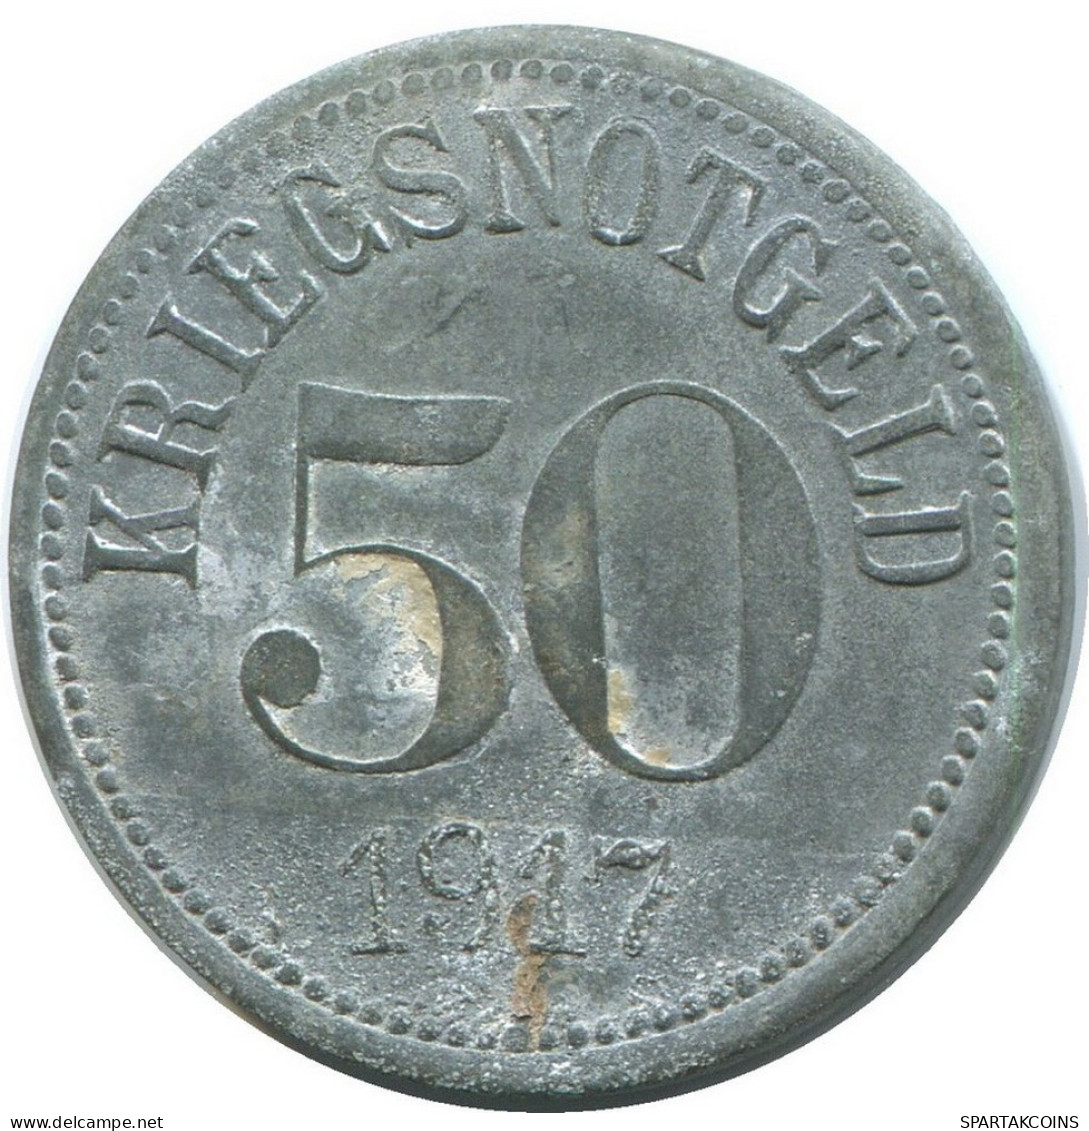 BAVARIA 50 PFENNIG 1917 Fürth In Bayern Notgeld German States #DE10514.6.U.A - 50 Pfennig